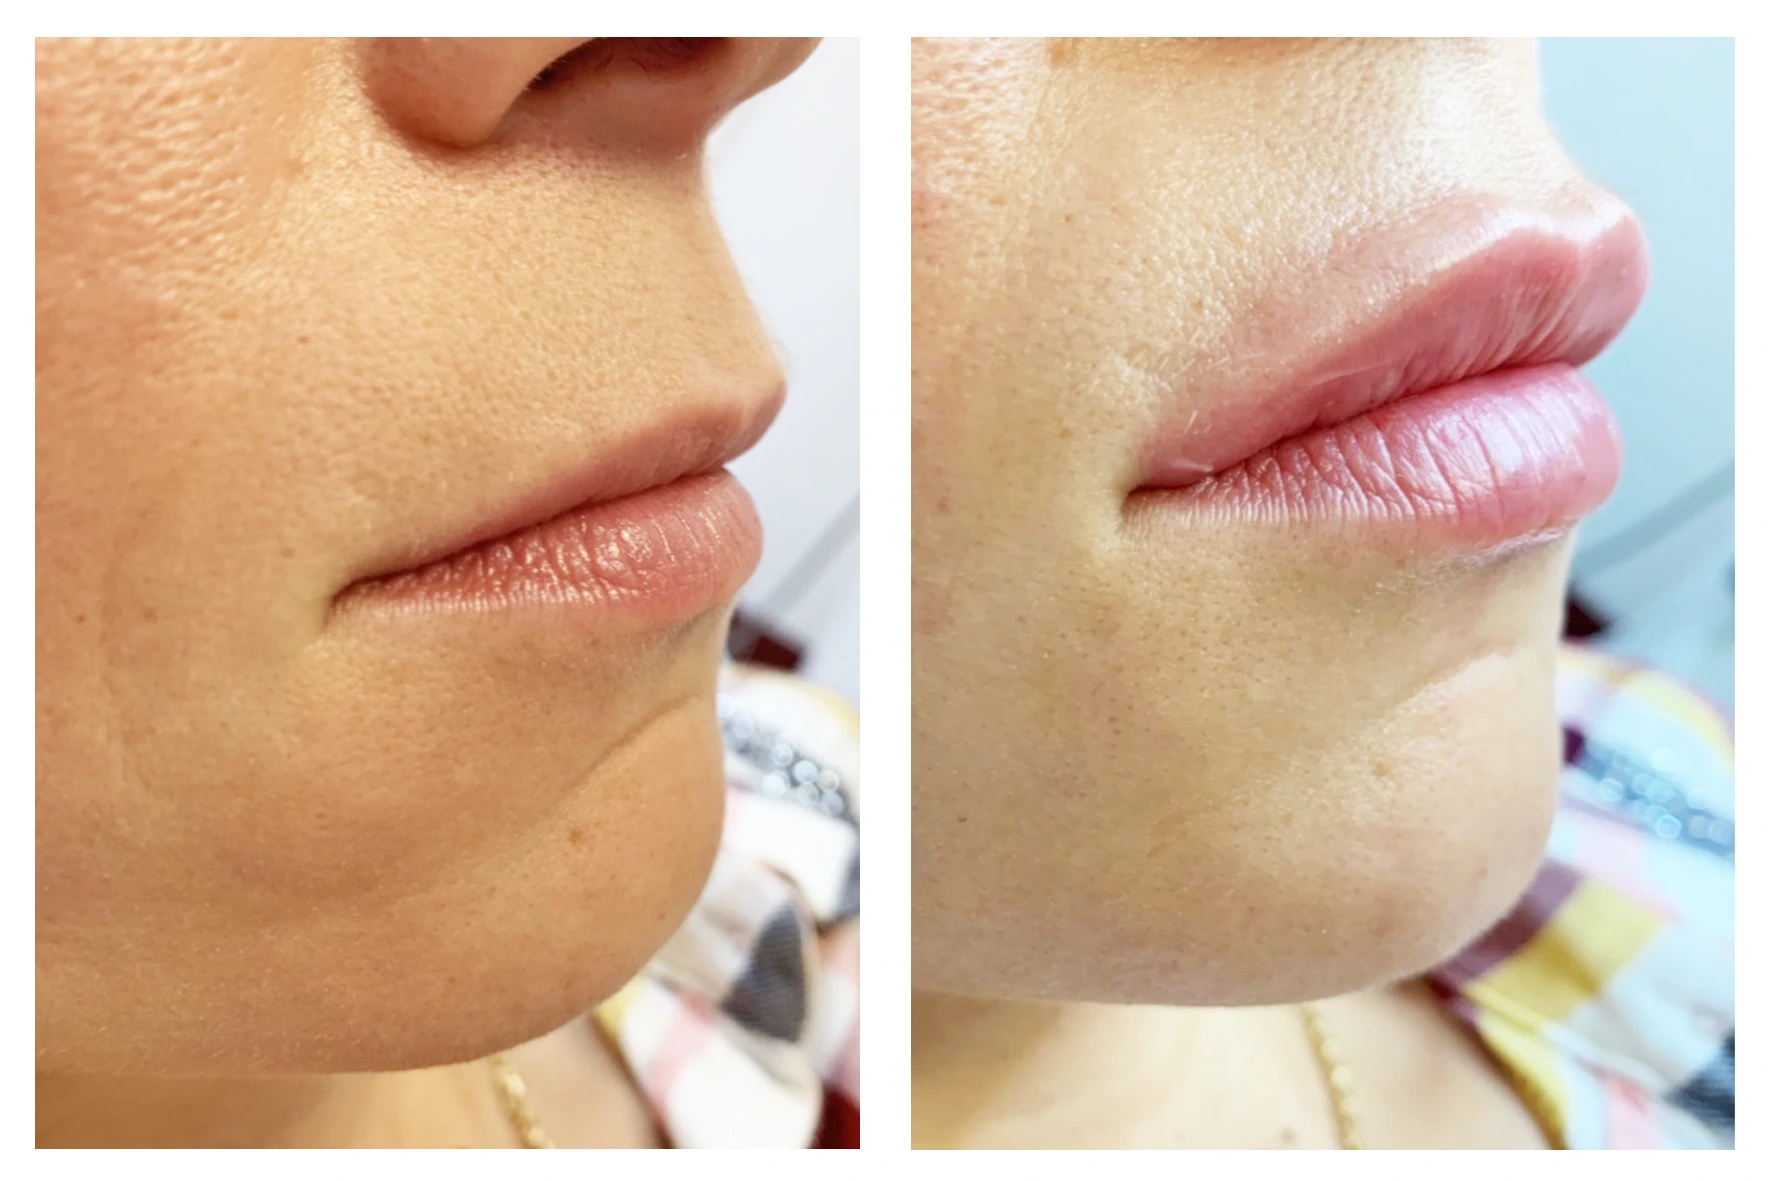 lips 2 - Увеличение губ